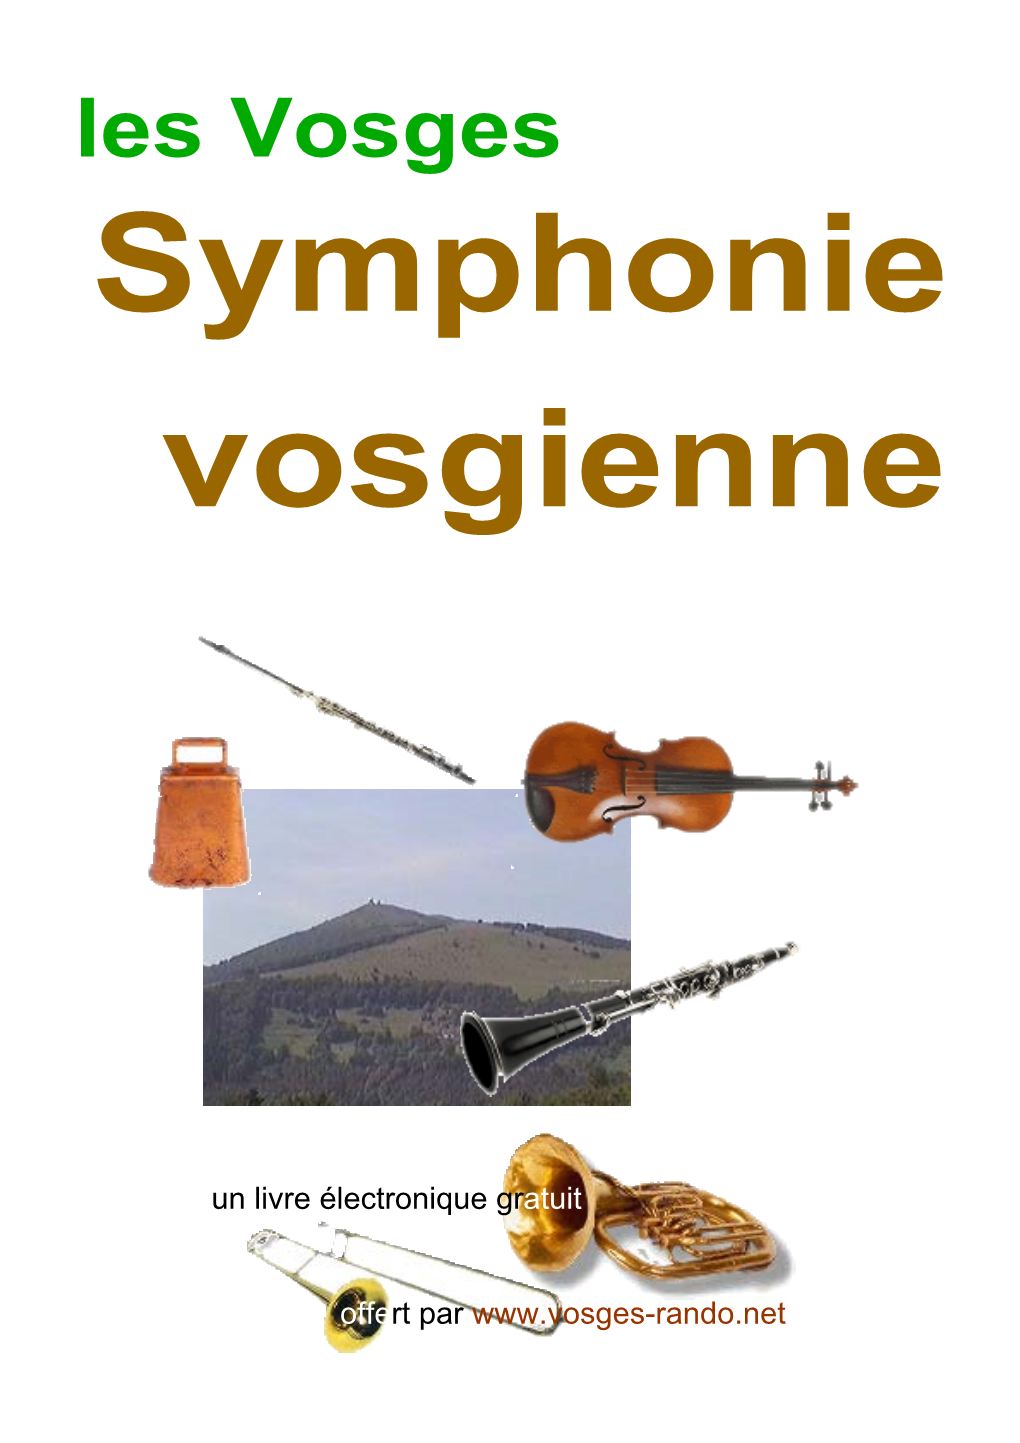 Les Vosges Symphonie Vosgienne